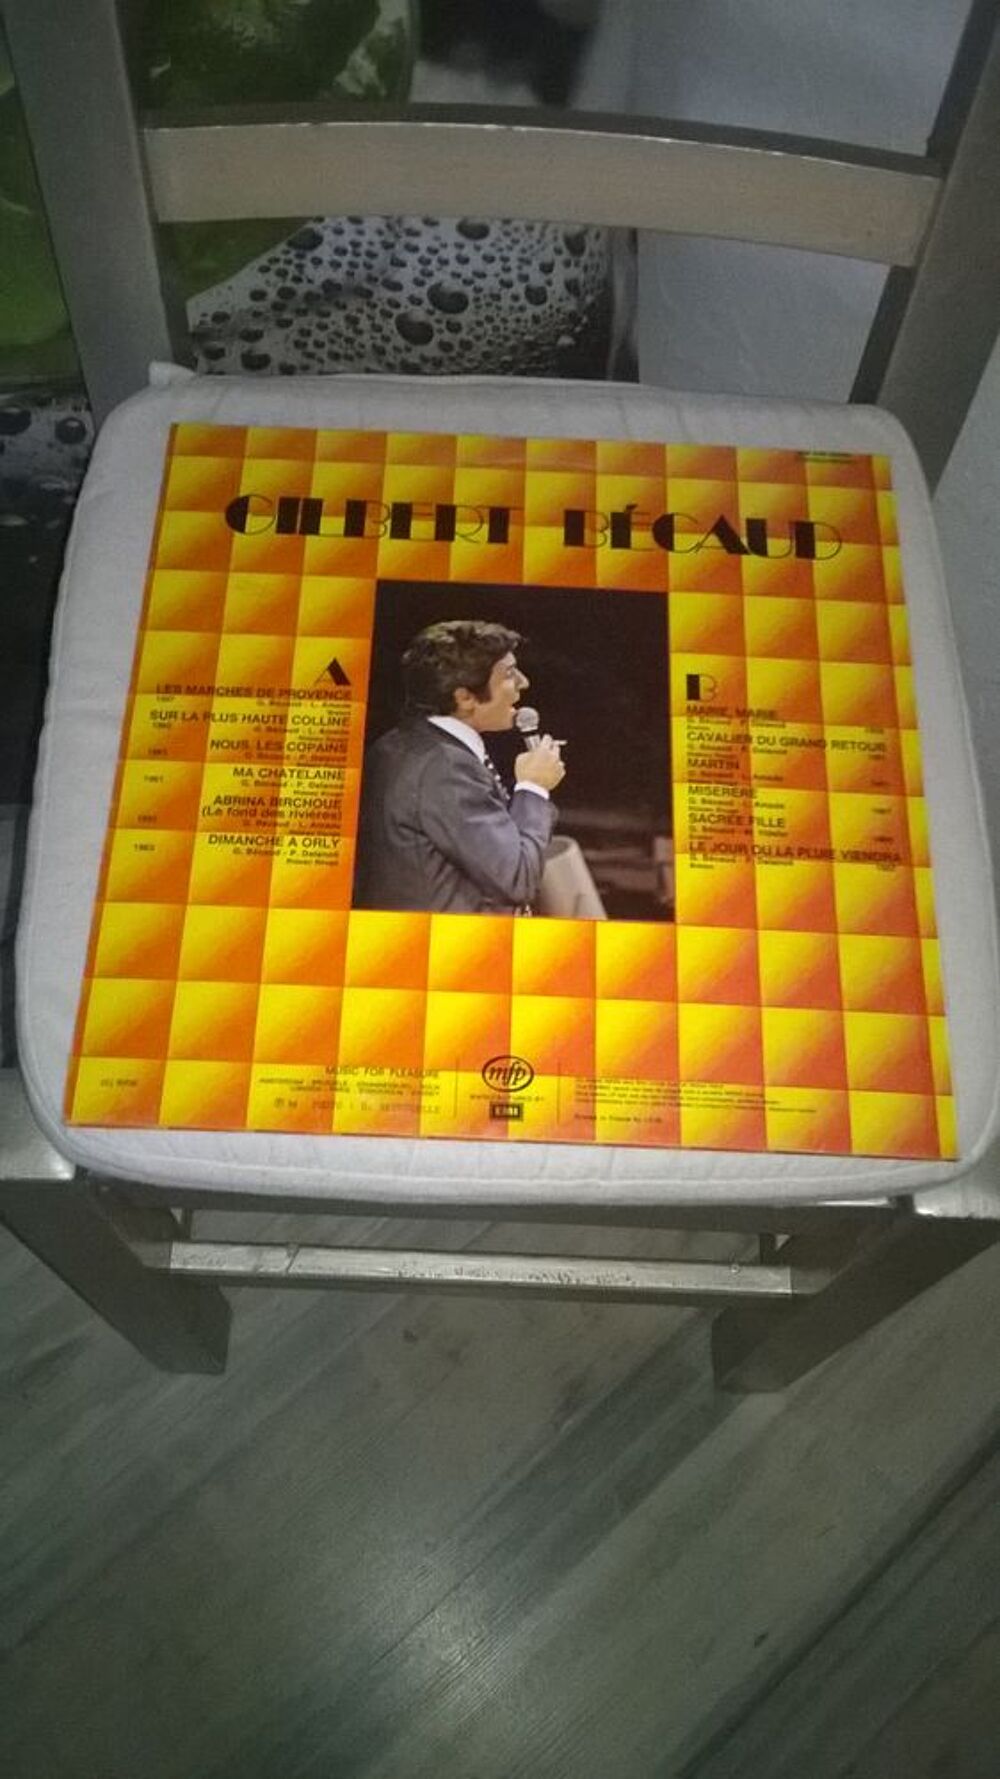 Vinyle Gilbert B&eacute;caud
Dimanche A Orly
1974
Excellent etat CD et vinyles